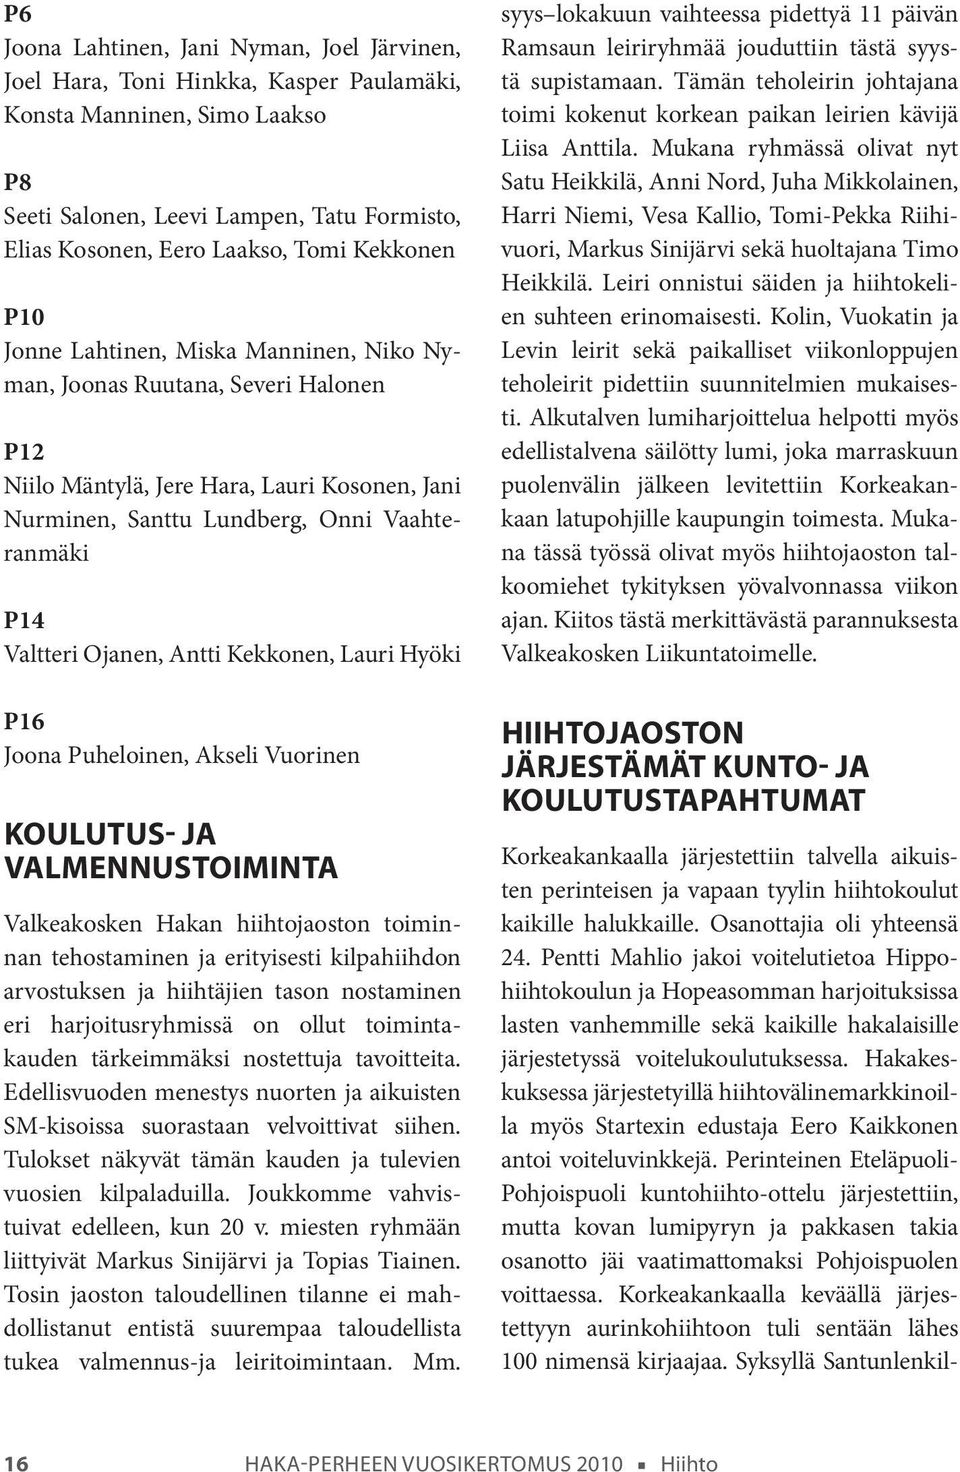 Ojanen, Antti Kekkonen, Lauri Hyöki P16 Joona Puheloinen, Akseli Vuorinen Koulutus- ja valmennustoiminta Valkeakosken Hakan hiihtojaoston toiminnan tehostaminen ja erityisesti kilpahiihdon